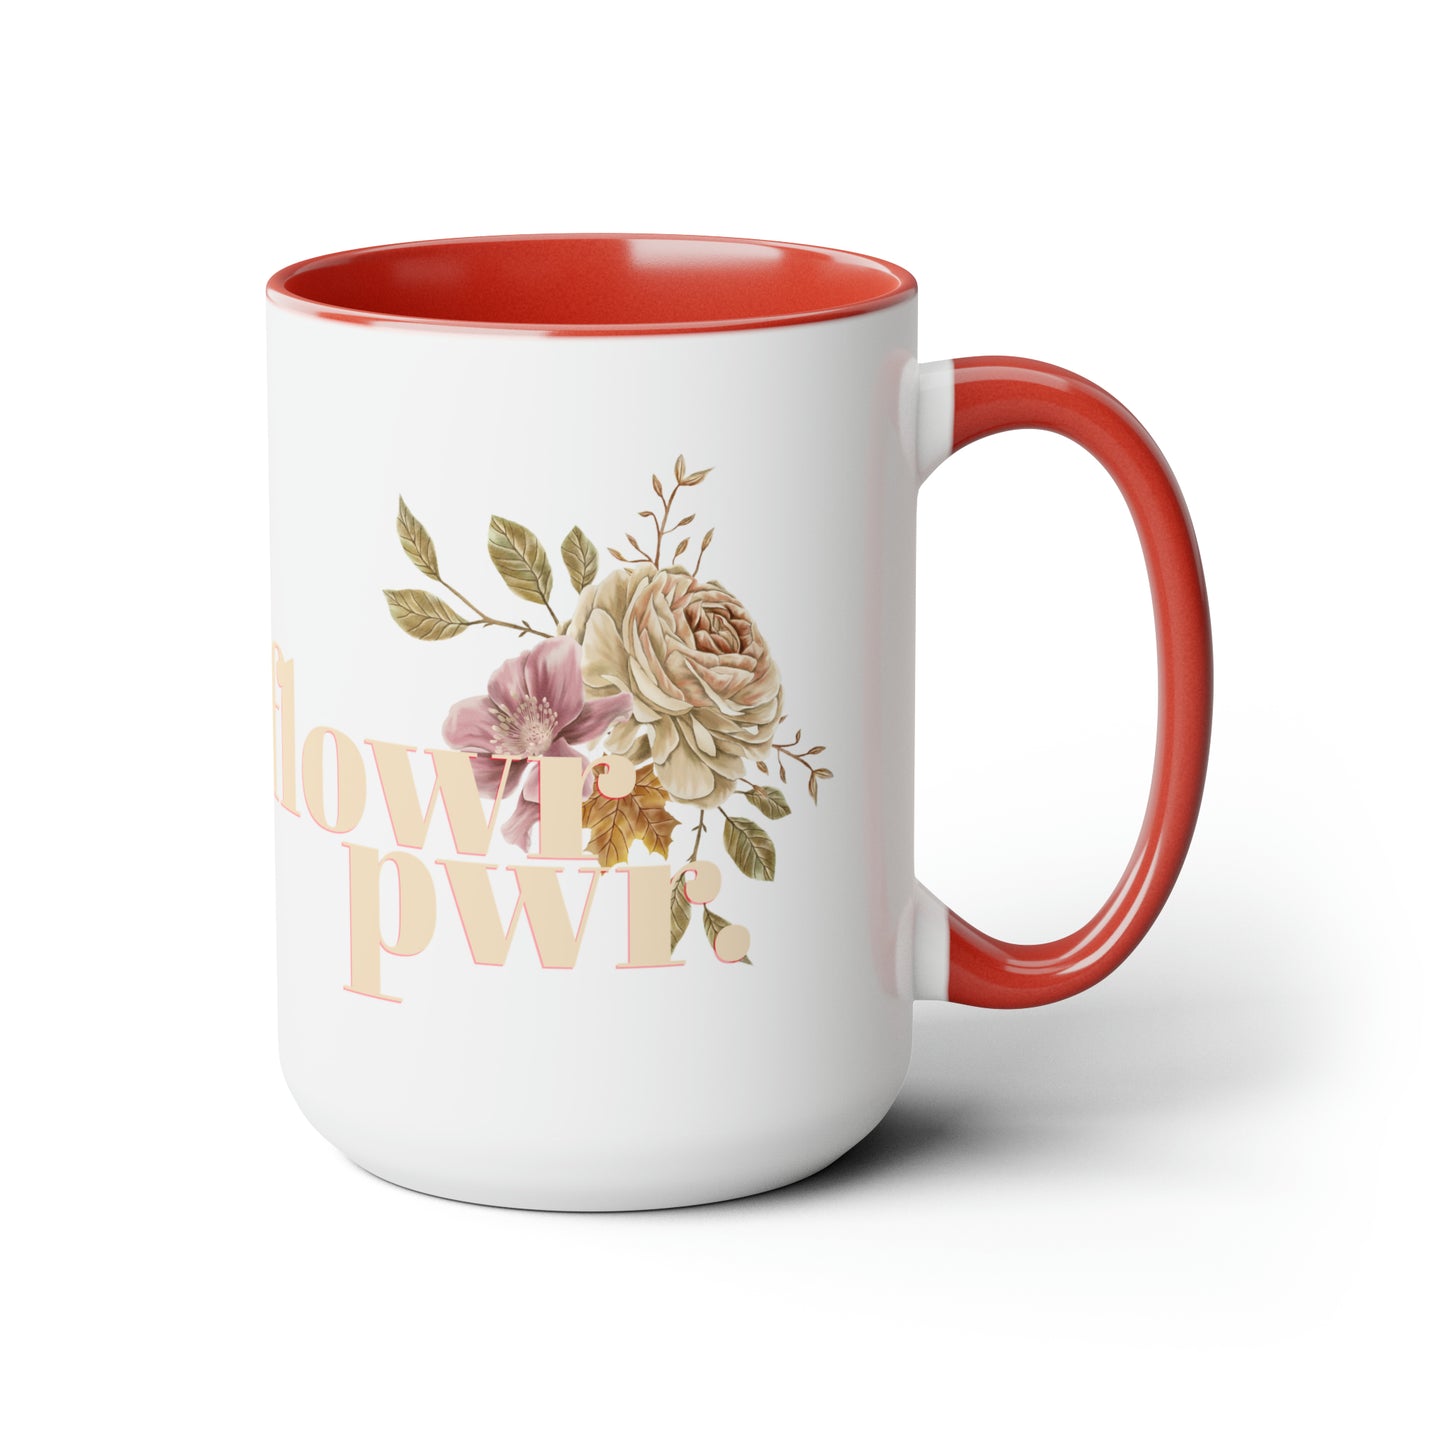 flowr pwr - 15oz graphic mug